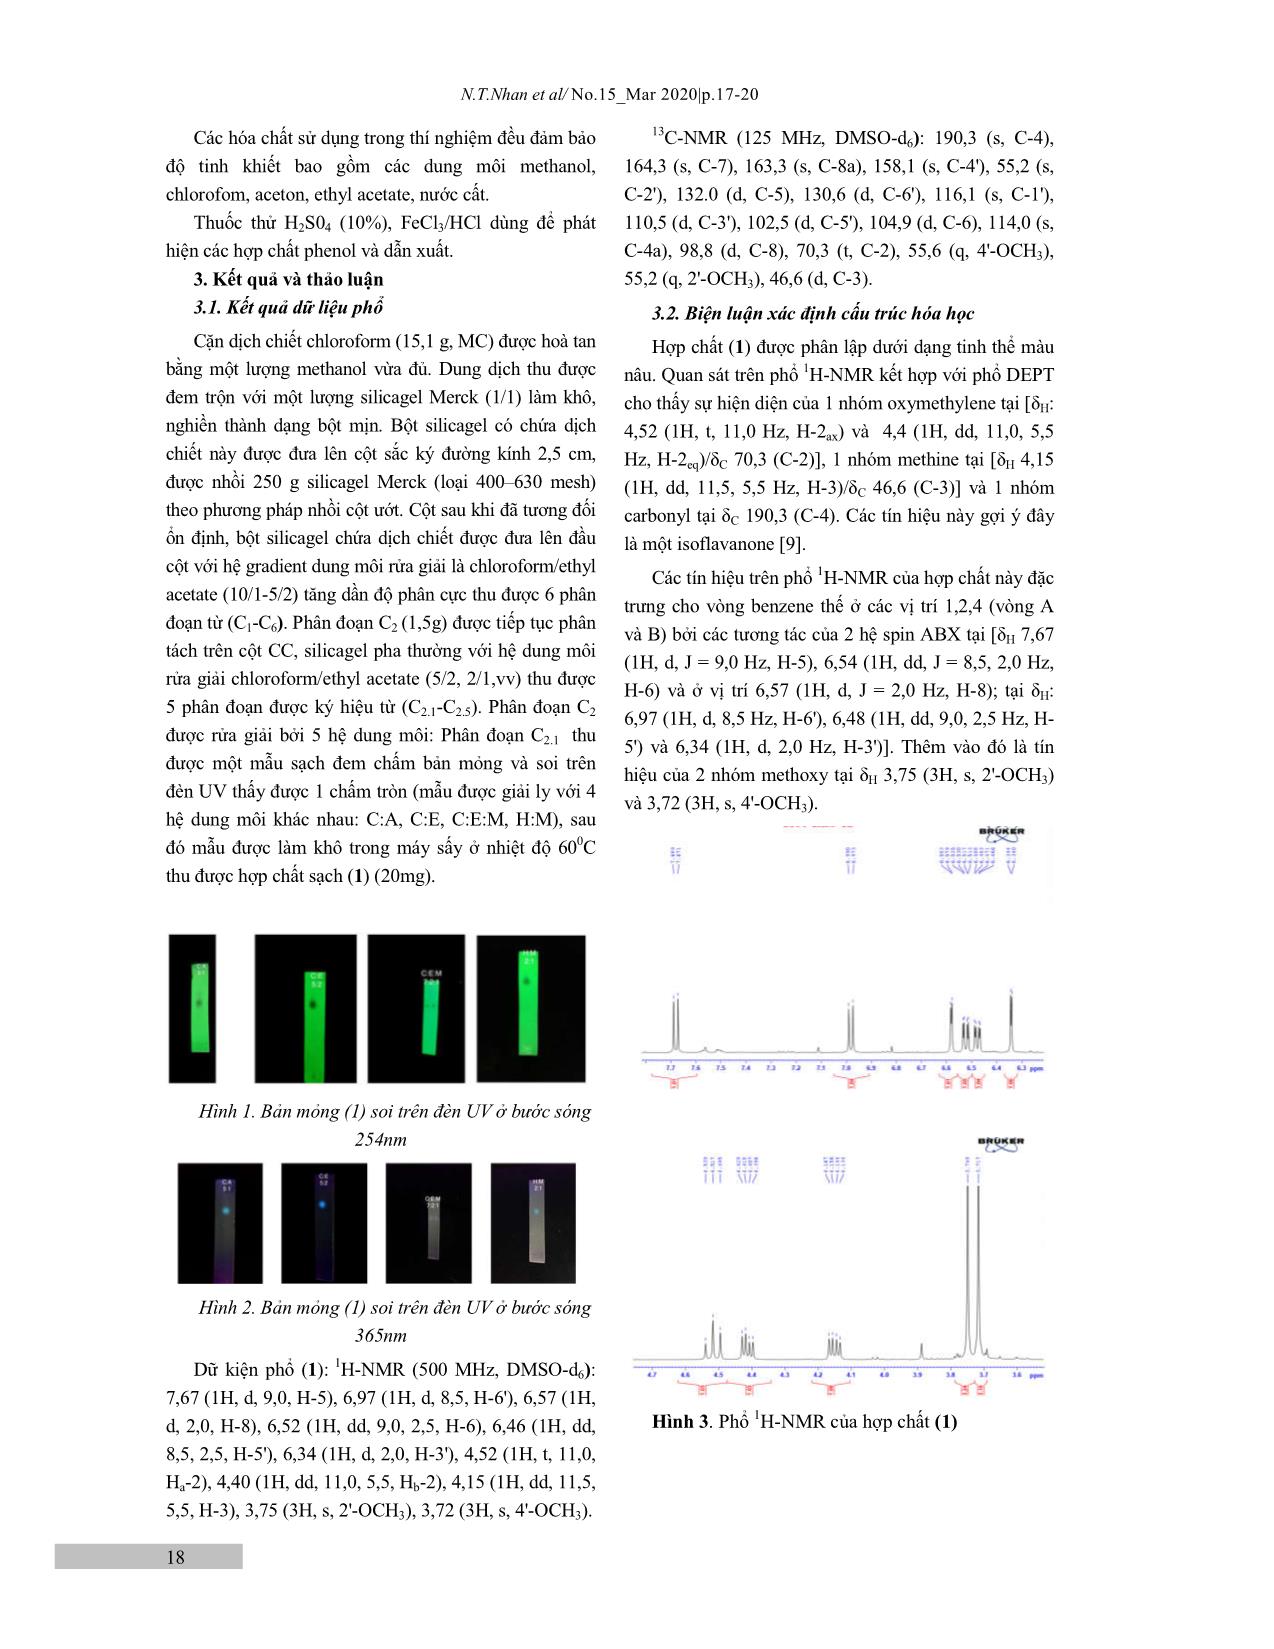 Góp phần nghiên cứu về thành phần hóa học của cây Sưa đỏ (dalbergia tonkinesis) ở Tây Nguyên trang 2